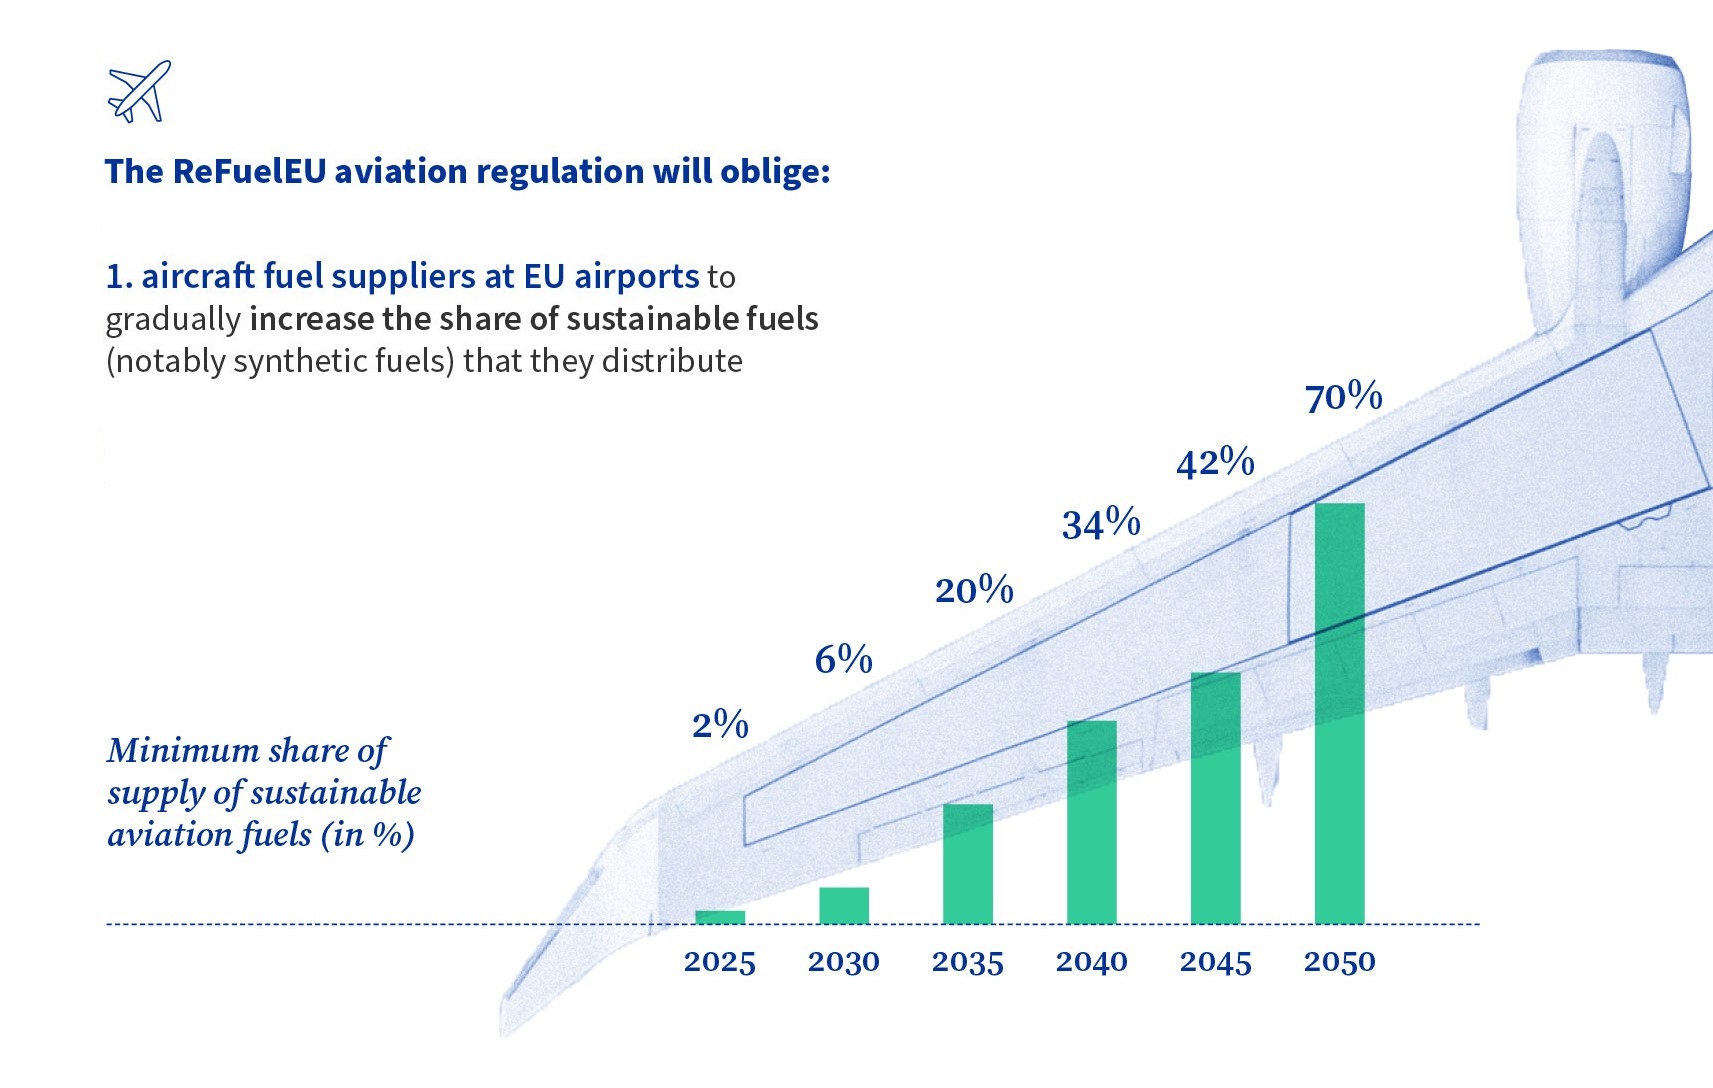 Decarbonizzazione dell'aviazione: percentuale minima di carburanti sostenibili che devono essere erogate negli aeroporti europei dal 2025 al 2050 secondo ReFuelEU